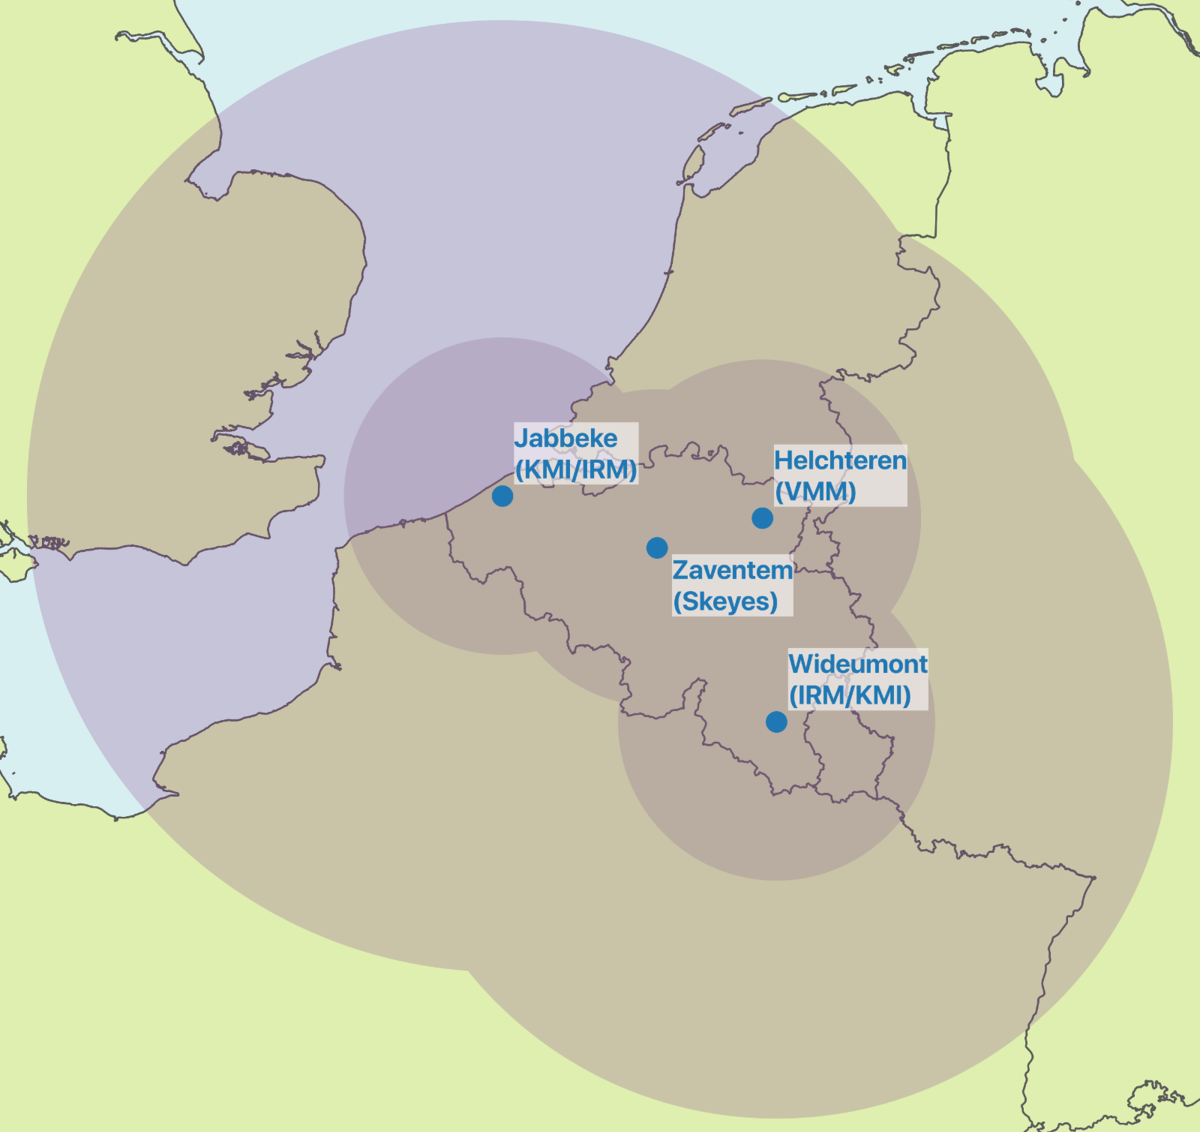 Das belgische Netzwerk der meteorologischen Radare. Um jeden Radar ist ein Bereich von ca 100 km angegeben, das ist der Bereich, in dem qualitative Niederschlagseinschätzungen durchgeführt werden können. Der größere Bereich gibt die komplette Bandbreite an.